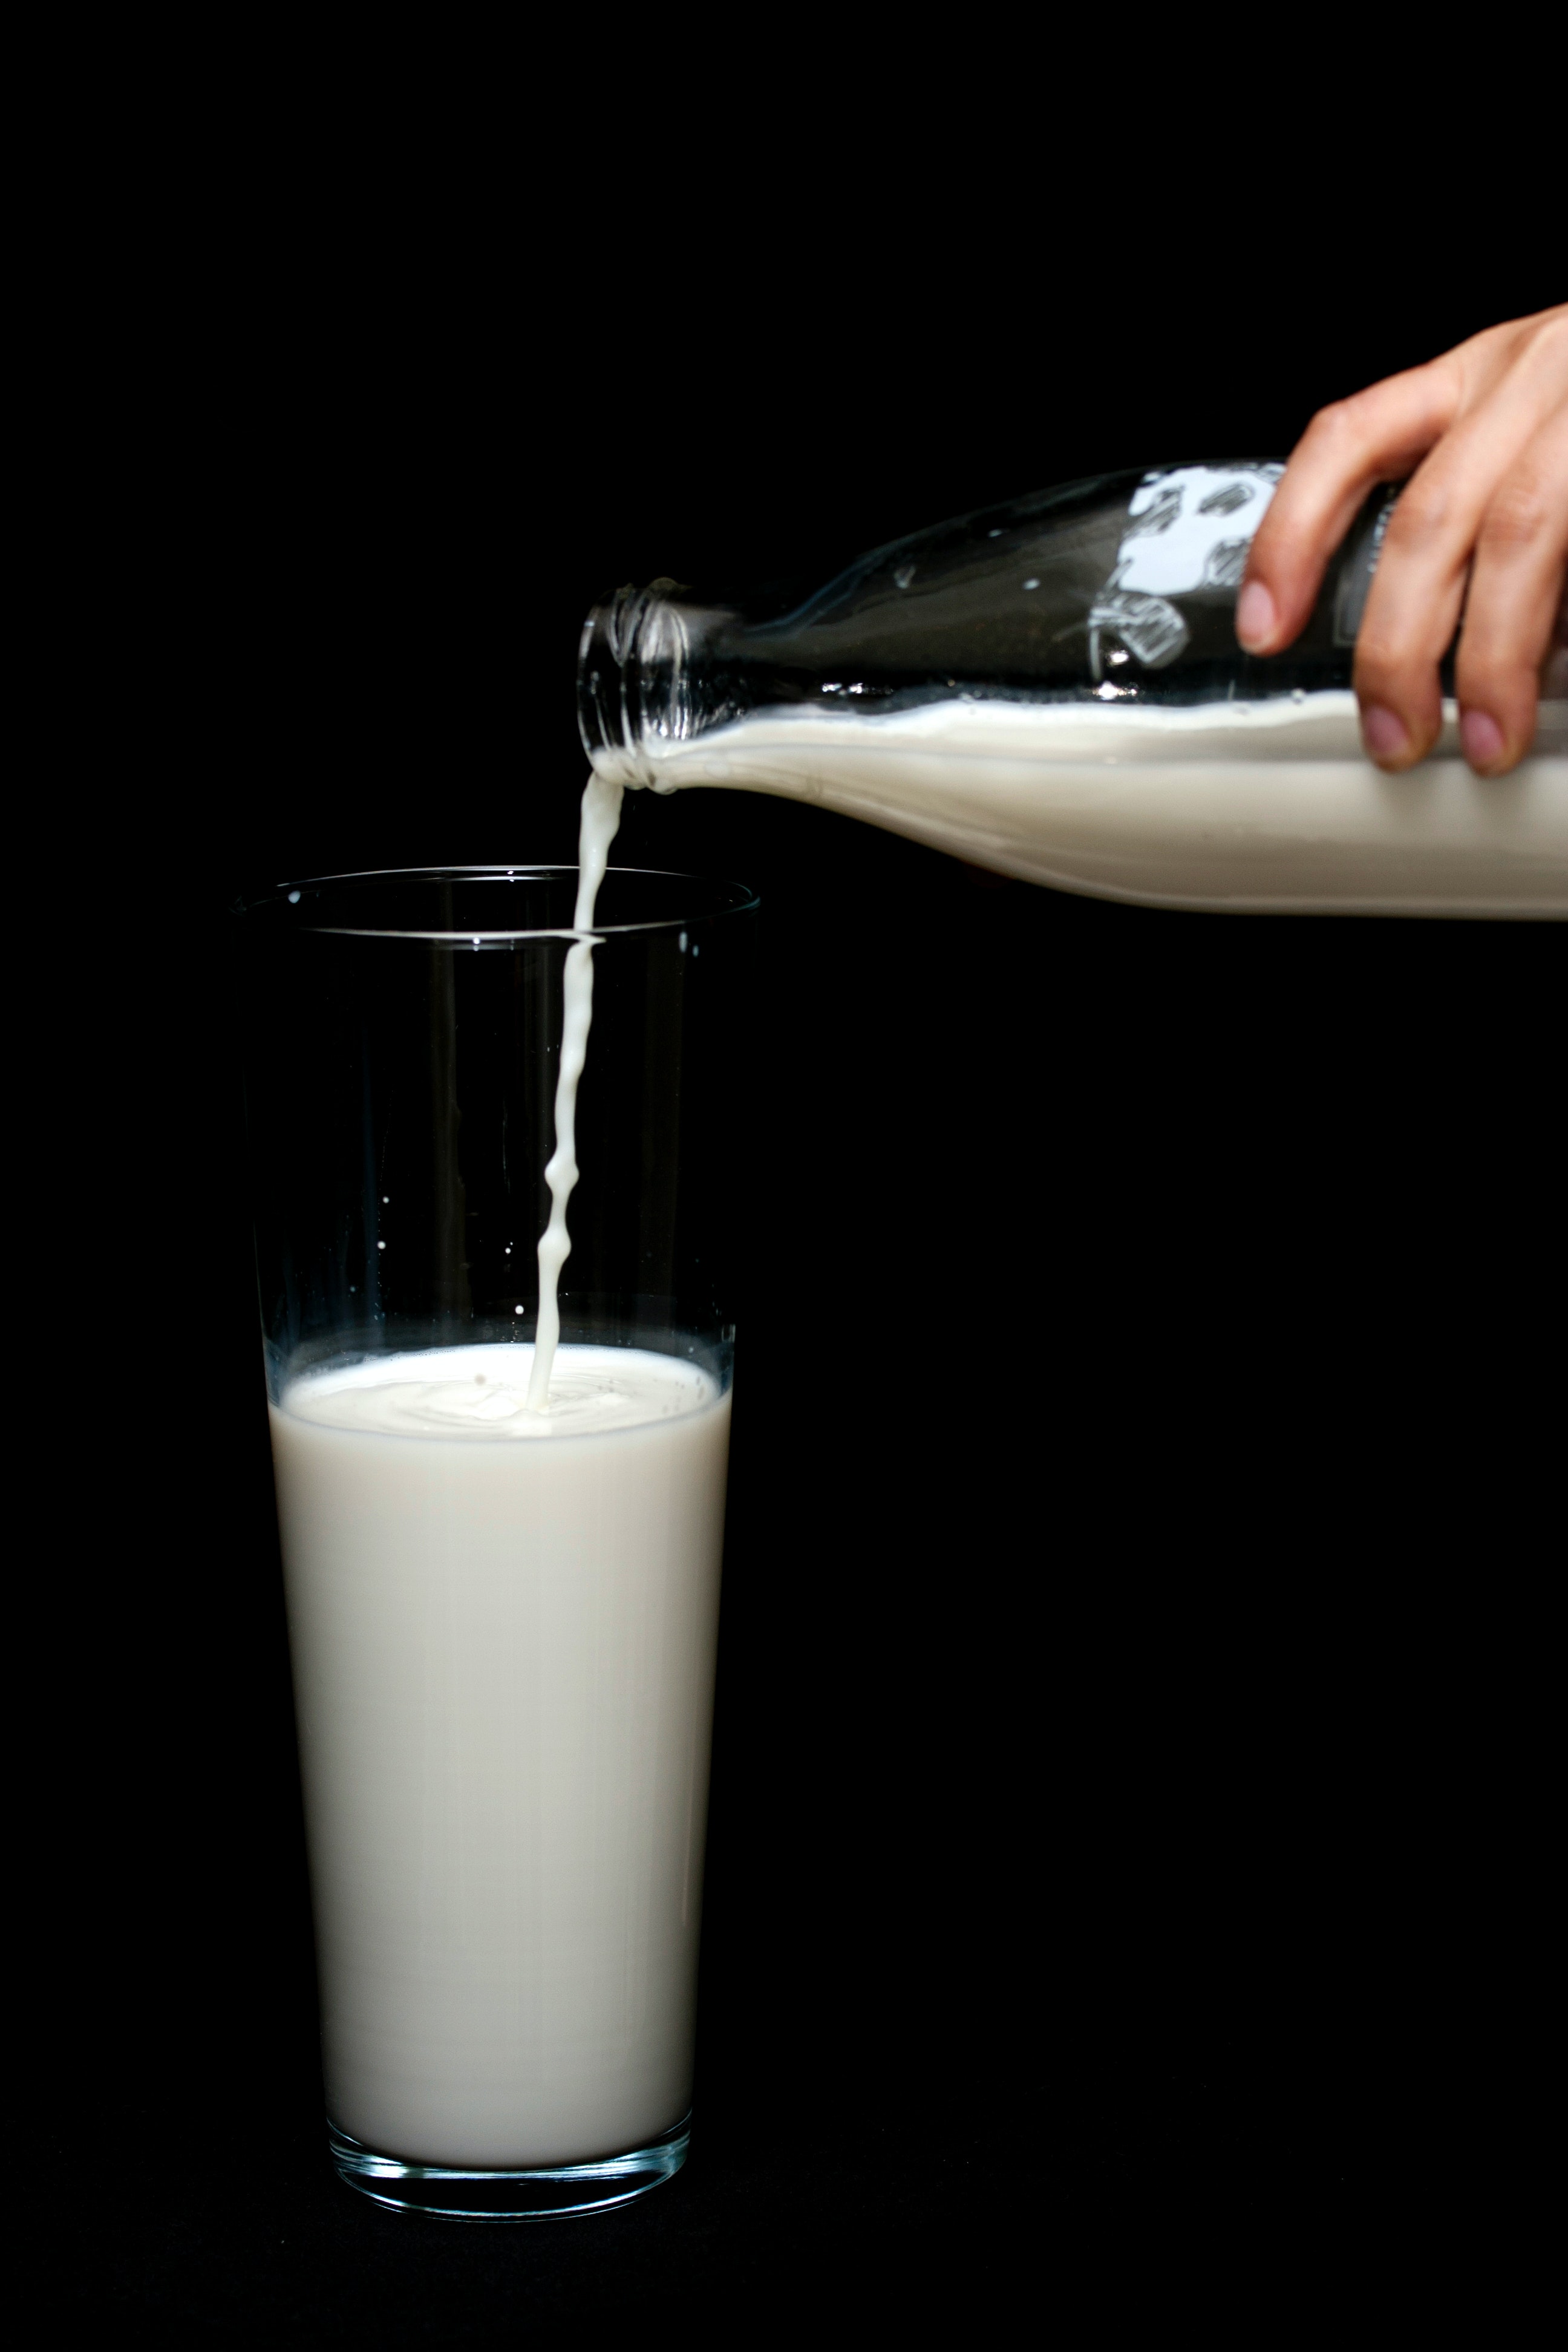 Ίσως ήρθε η στιγμή να ανταλλάξουμε το γάλα με το νερό για καλύτερη ενυδάτωση